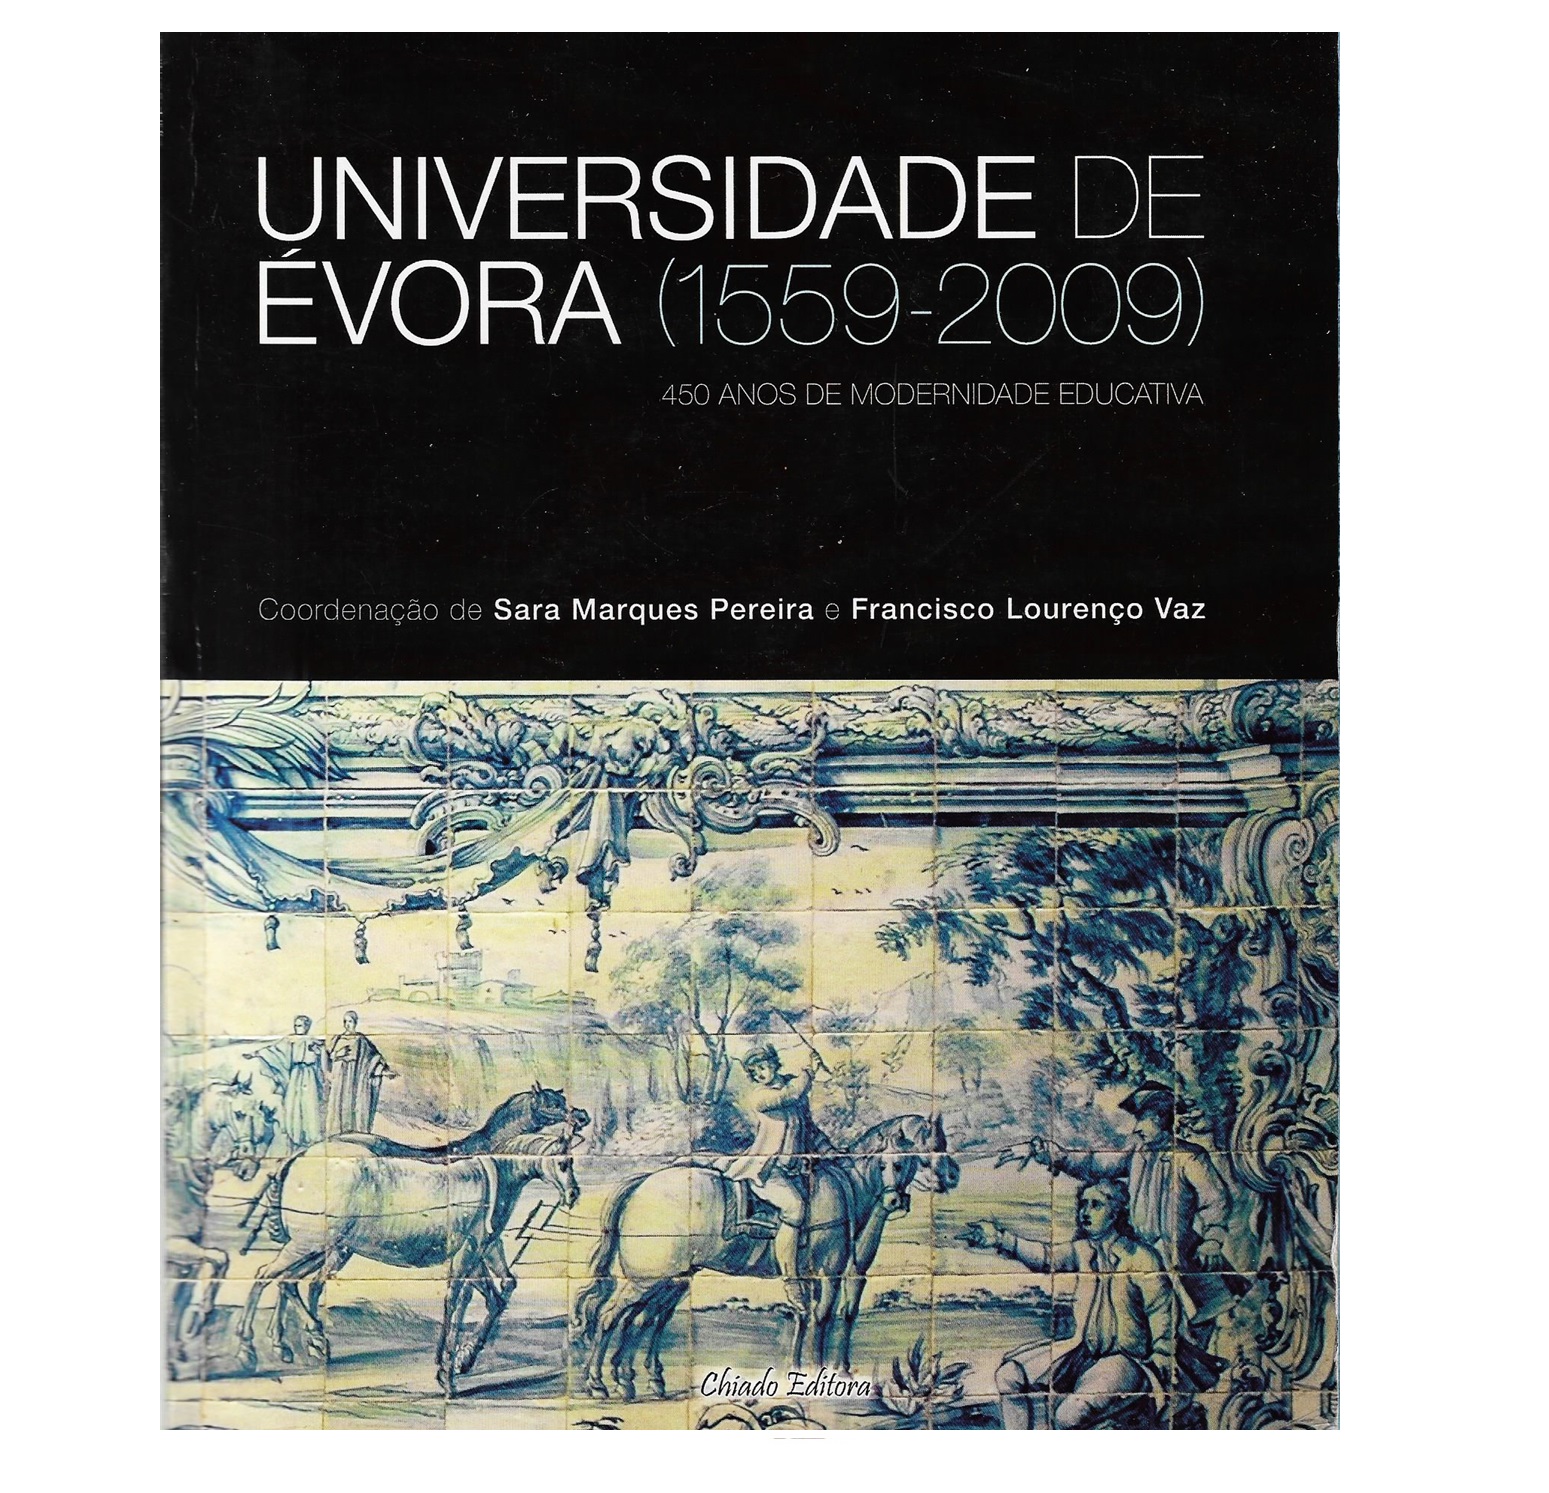 UNIVERSIDADE DE ÉVORA (1559-2009)